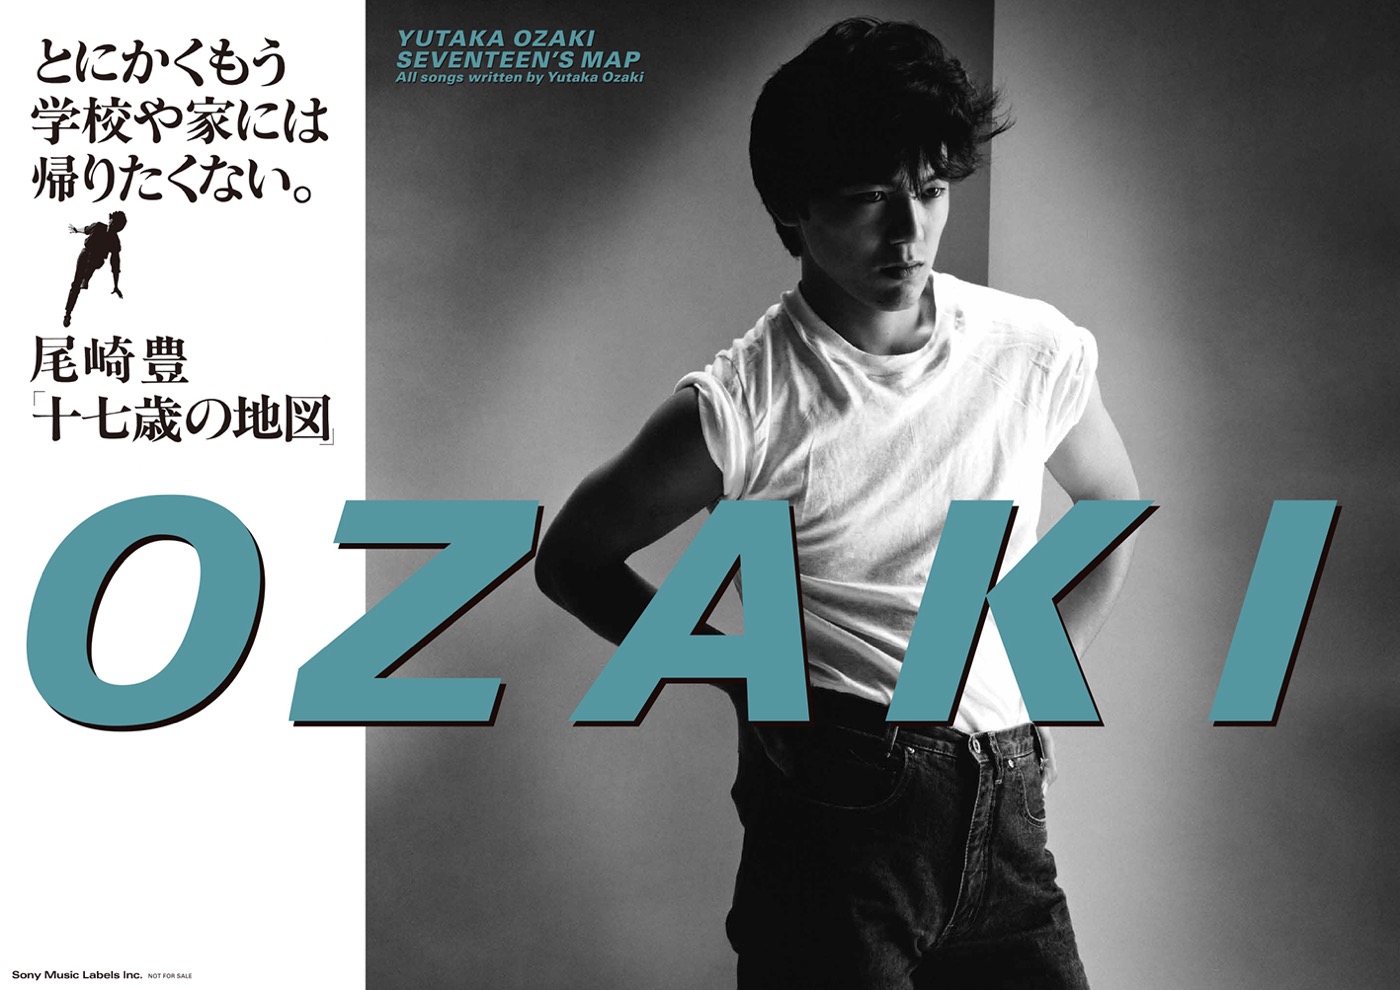 尾崎豊デビュー40周年を記念して、幻のデビューポスターが復刻